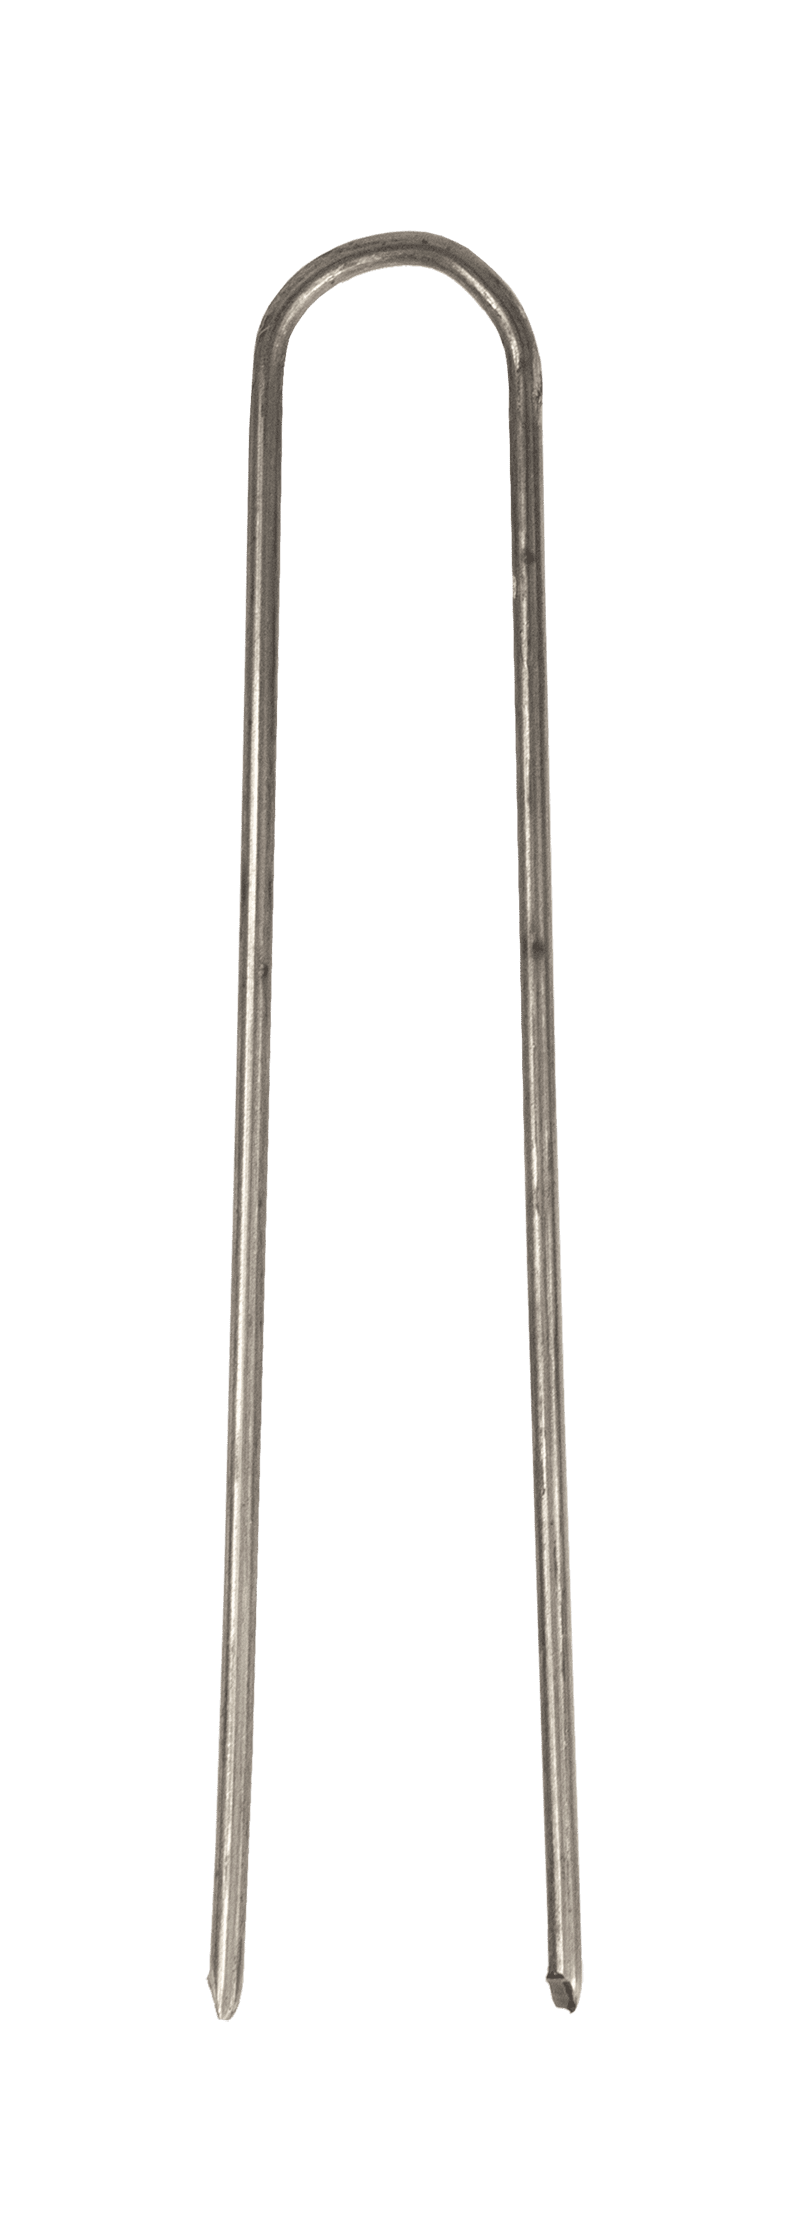 Efeunadeln, Metall, 60 mm, 100g-Beutel